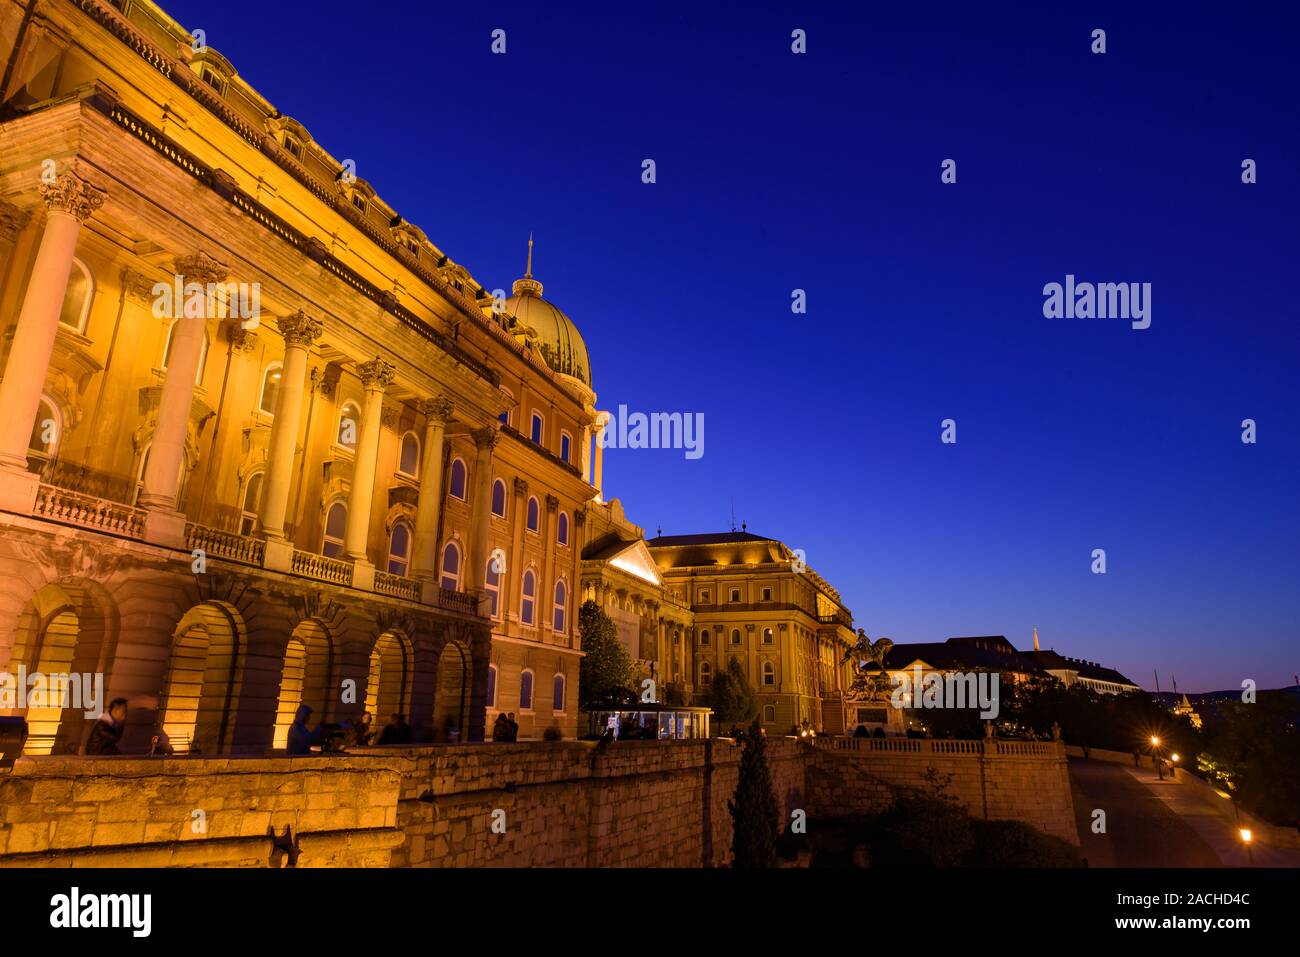 Blick auf die Budaer Burg, die historische Burg und die Palastanlage der ungarischen Könige in Budapest, Ungarn Stockfoto